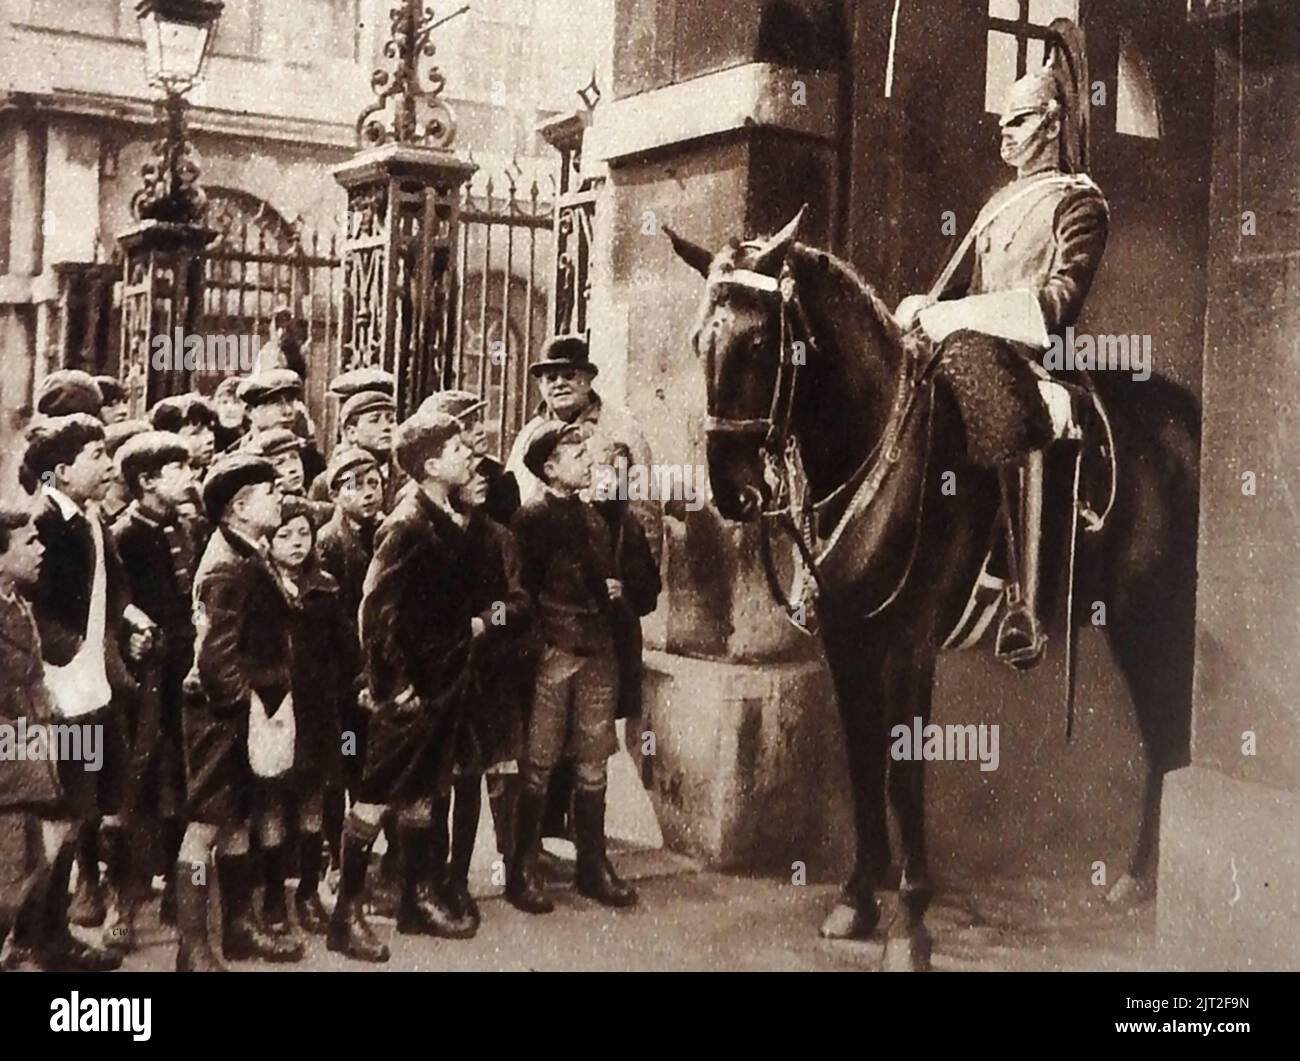 VIEUX LONDRES - Une photo d'époque montrant un groupe d'écoliers en visite à rencontrer un garde-cheval à Horse Guards Parade. Tous les garçons portent des pantalons courts et des casquettes plates, autrefois une mode souvent traditionnelle en Grande-Bretagne , portés par des garçons de moins de onze ans avant d'aller à l'école. Banque D'Images